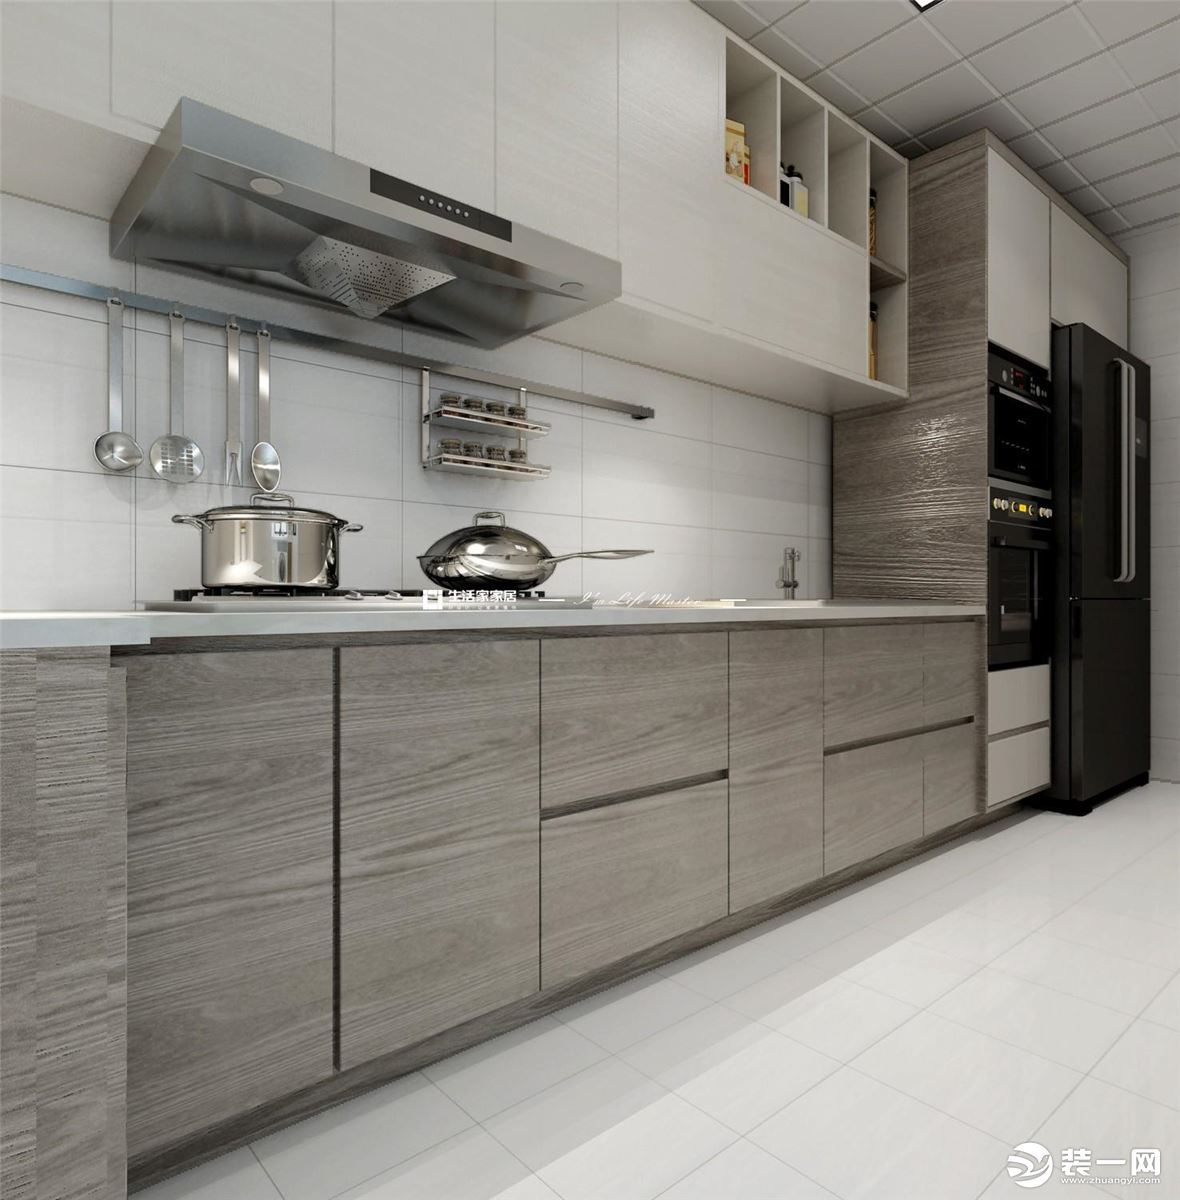 采用一字型的橱柜和吊柜，冰箱、微波炉等厨房电器也采用了内嵌式的方法，节省了厨房空间